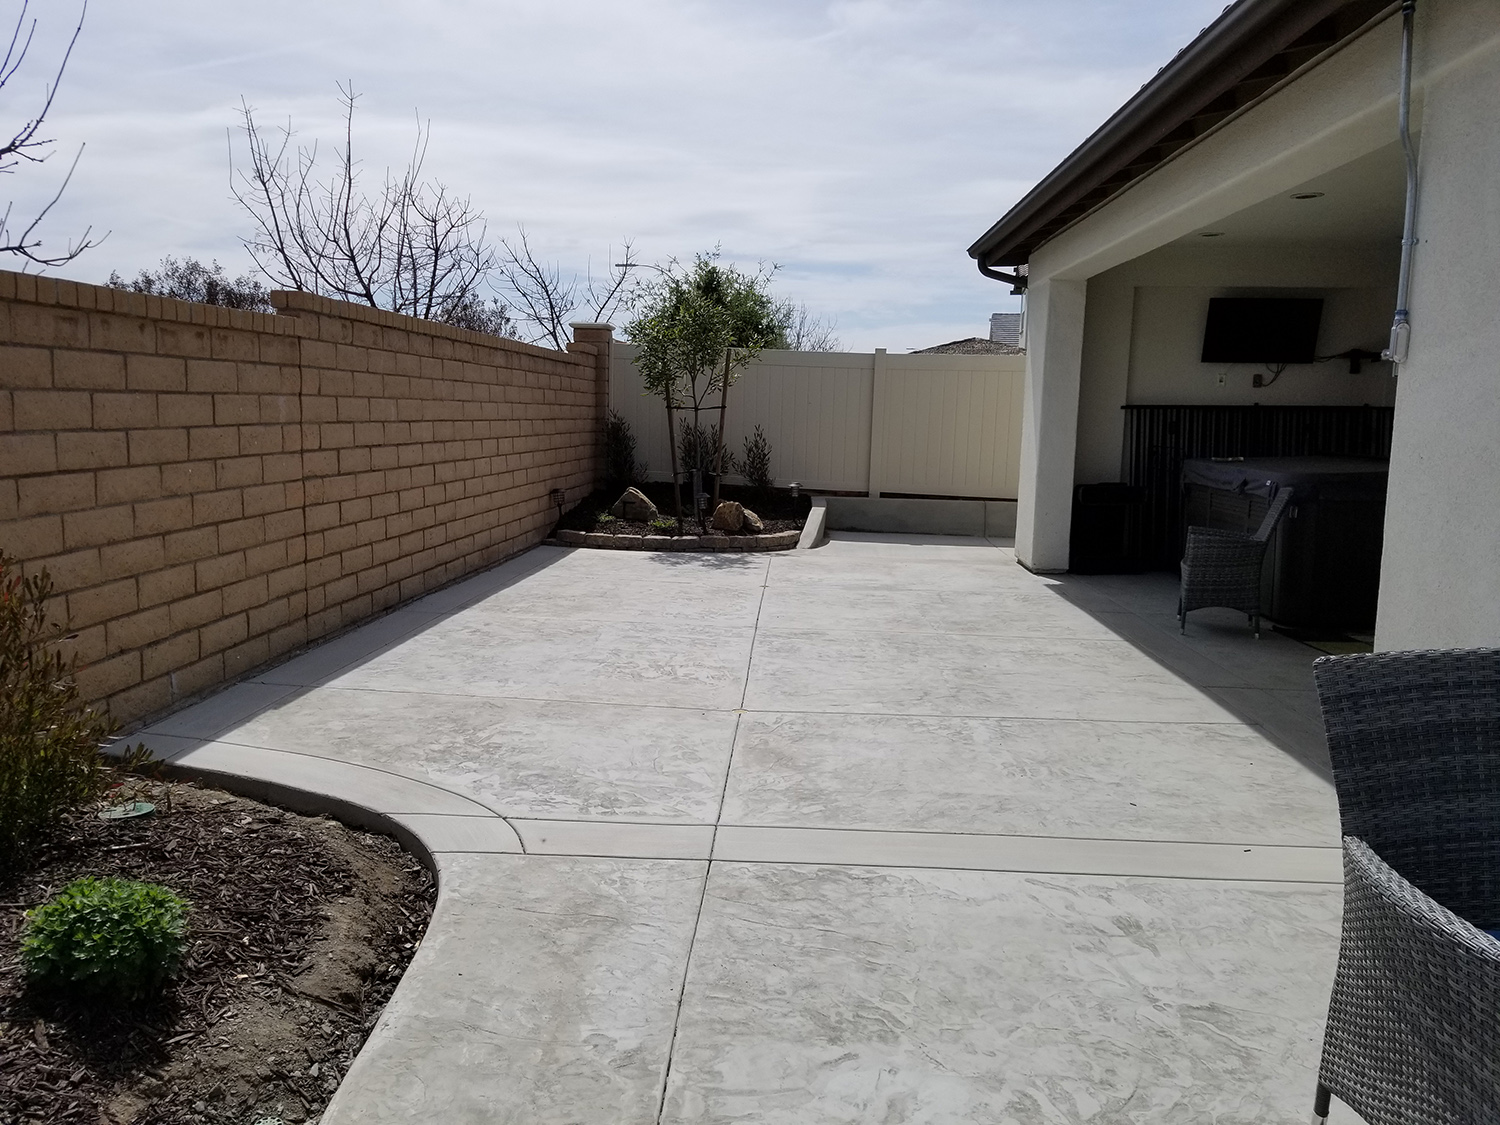 Concrete patio extension